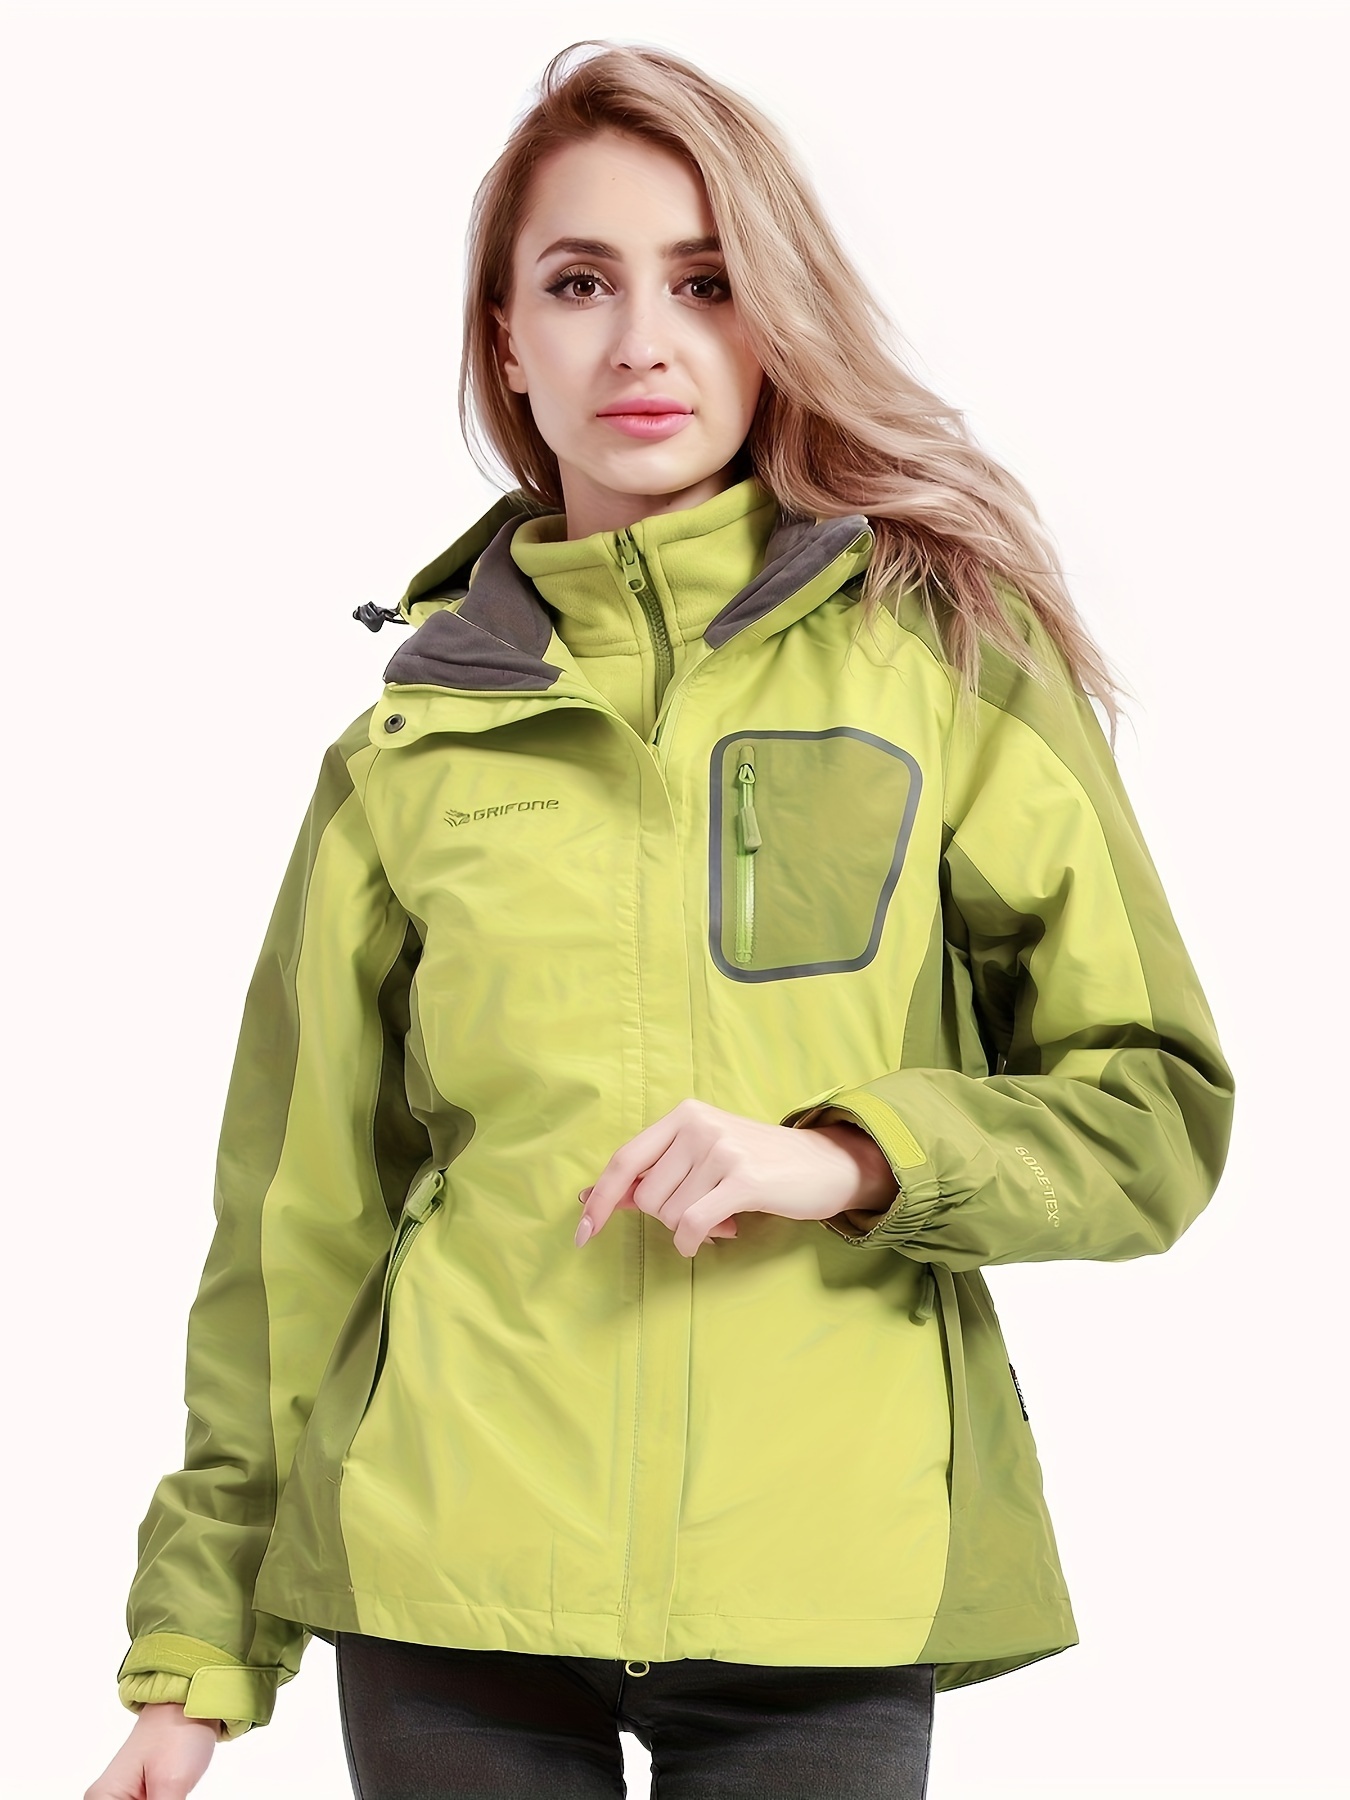 Stay Warm & Dry: 3-in-1 Outdoor Jacket For Women - Waterproof & Windproof  Hard Shell & Fleece Thermal Inner!